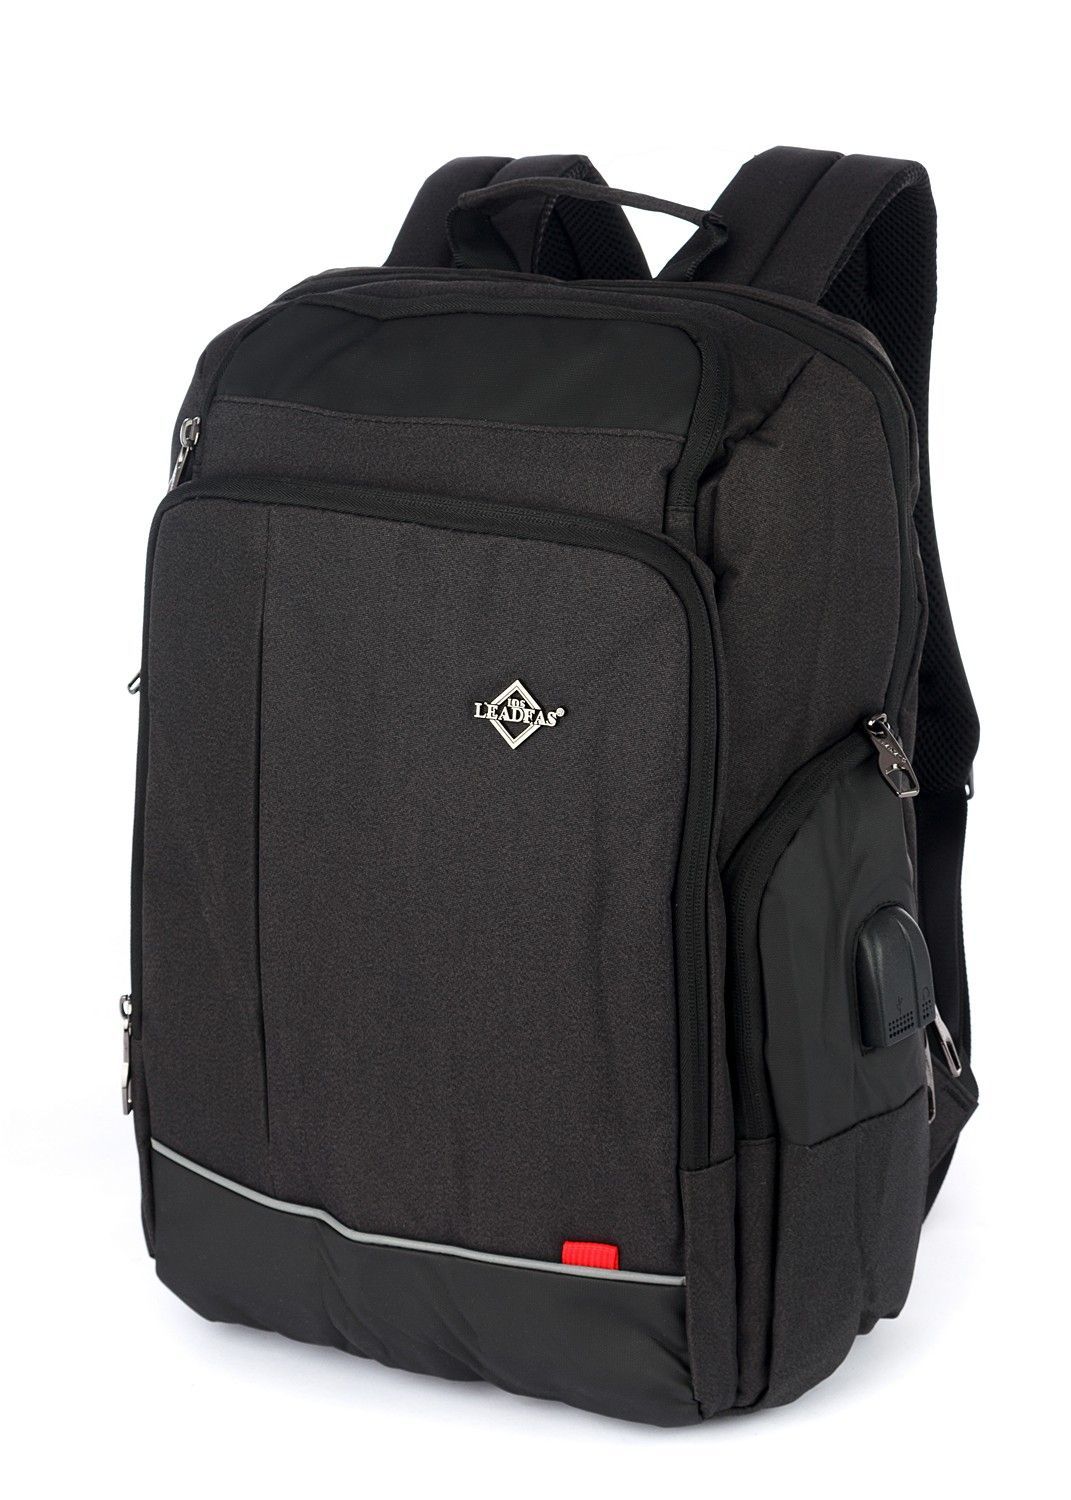 Рюкзак мужской городской, черный, для ноутбука, с USB портом, объем 18л